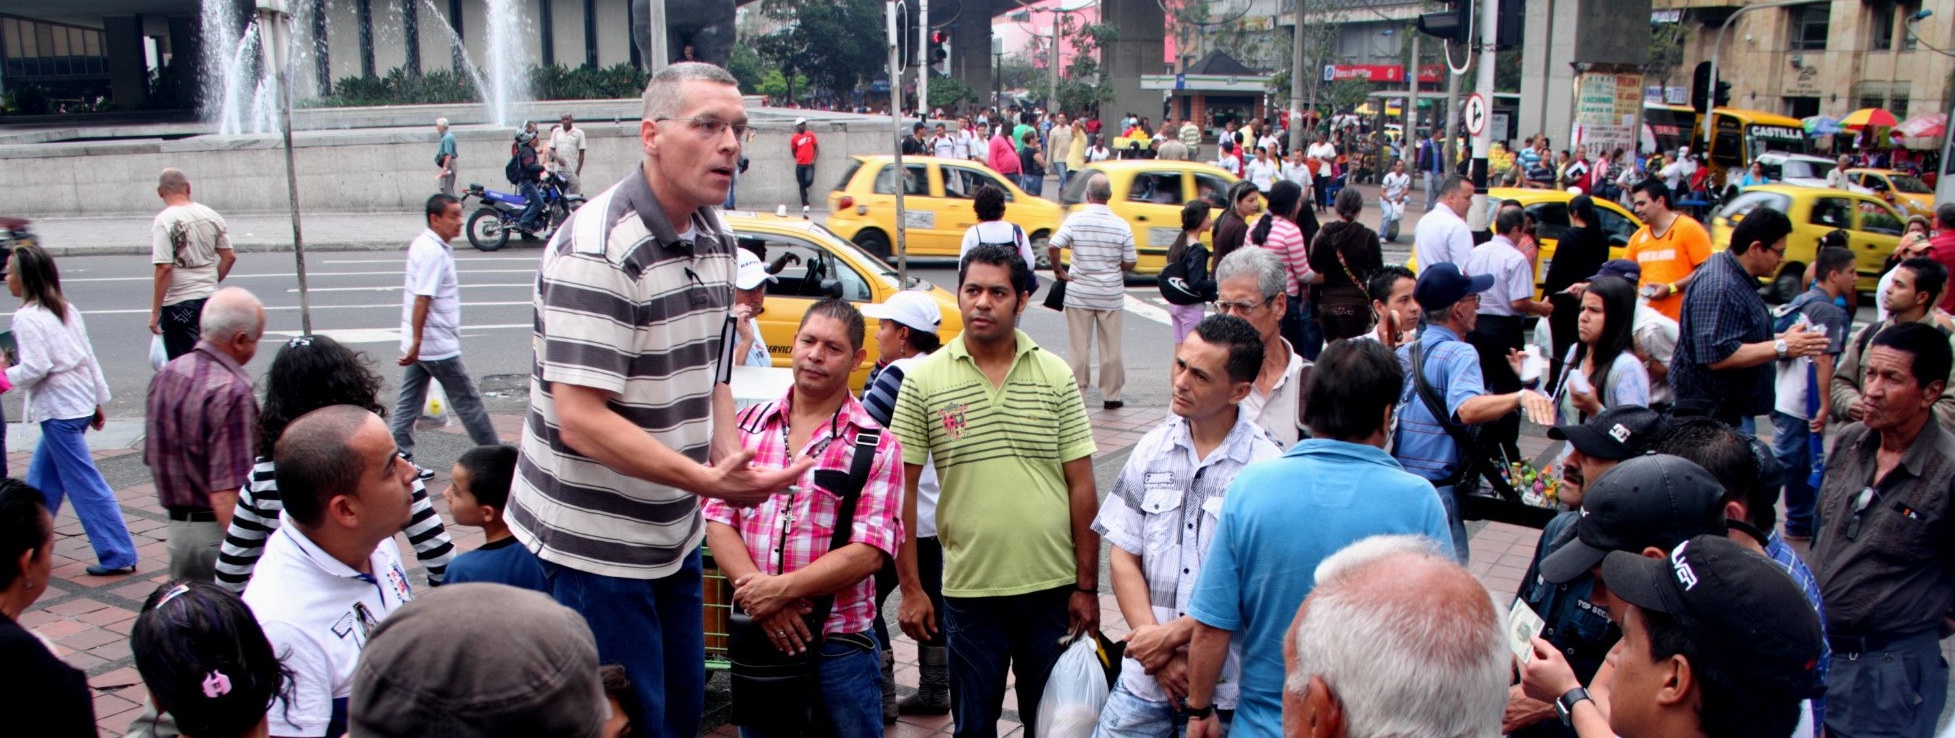 Evangelismo al aire libre en Colombia